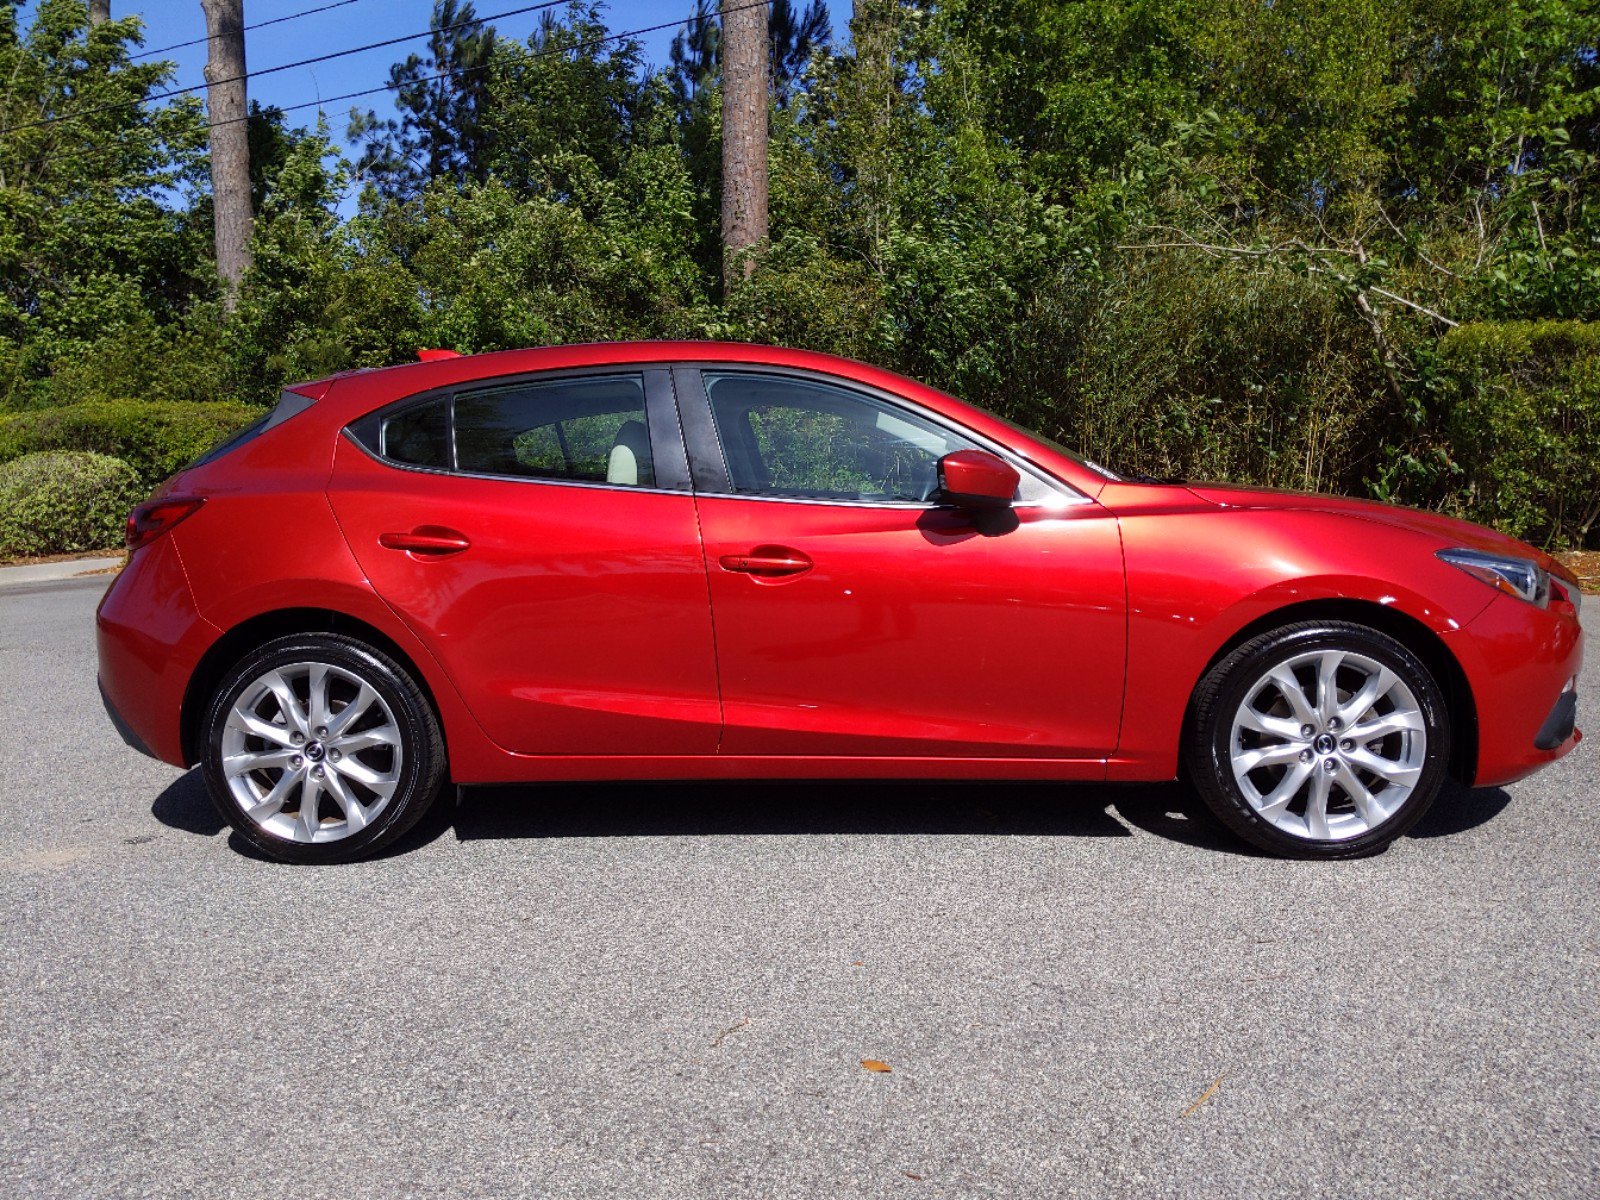 PreOwned 2014 Mazda Mazda3 s Grand Touring Hatchback in